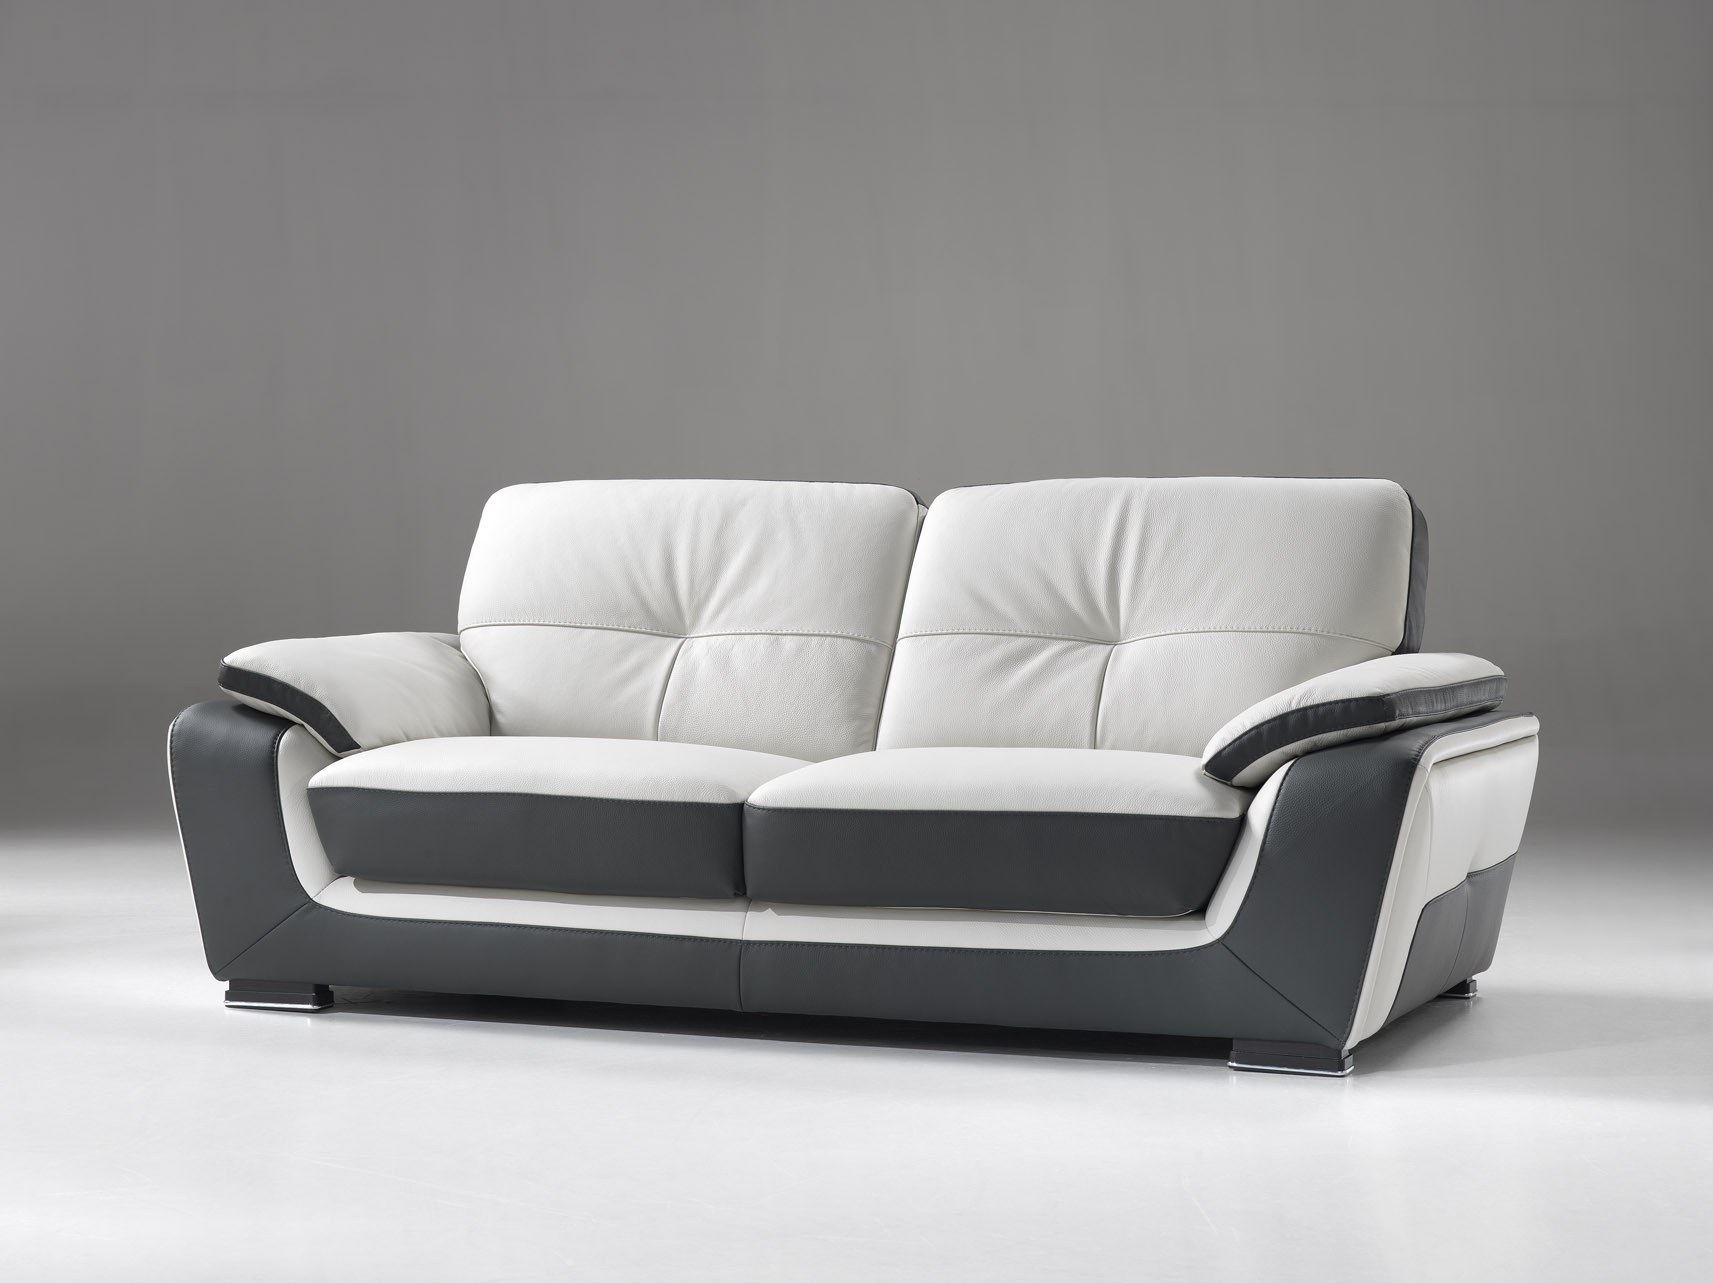 Buy new furniture. Диван. Красивые диваны. Диван современный прямой. Диваны стильные современные.